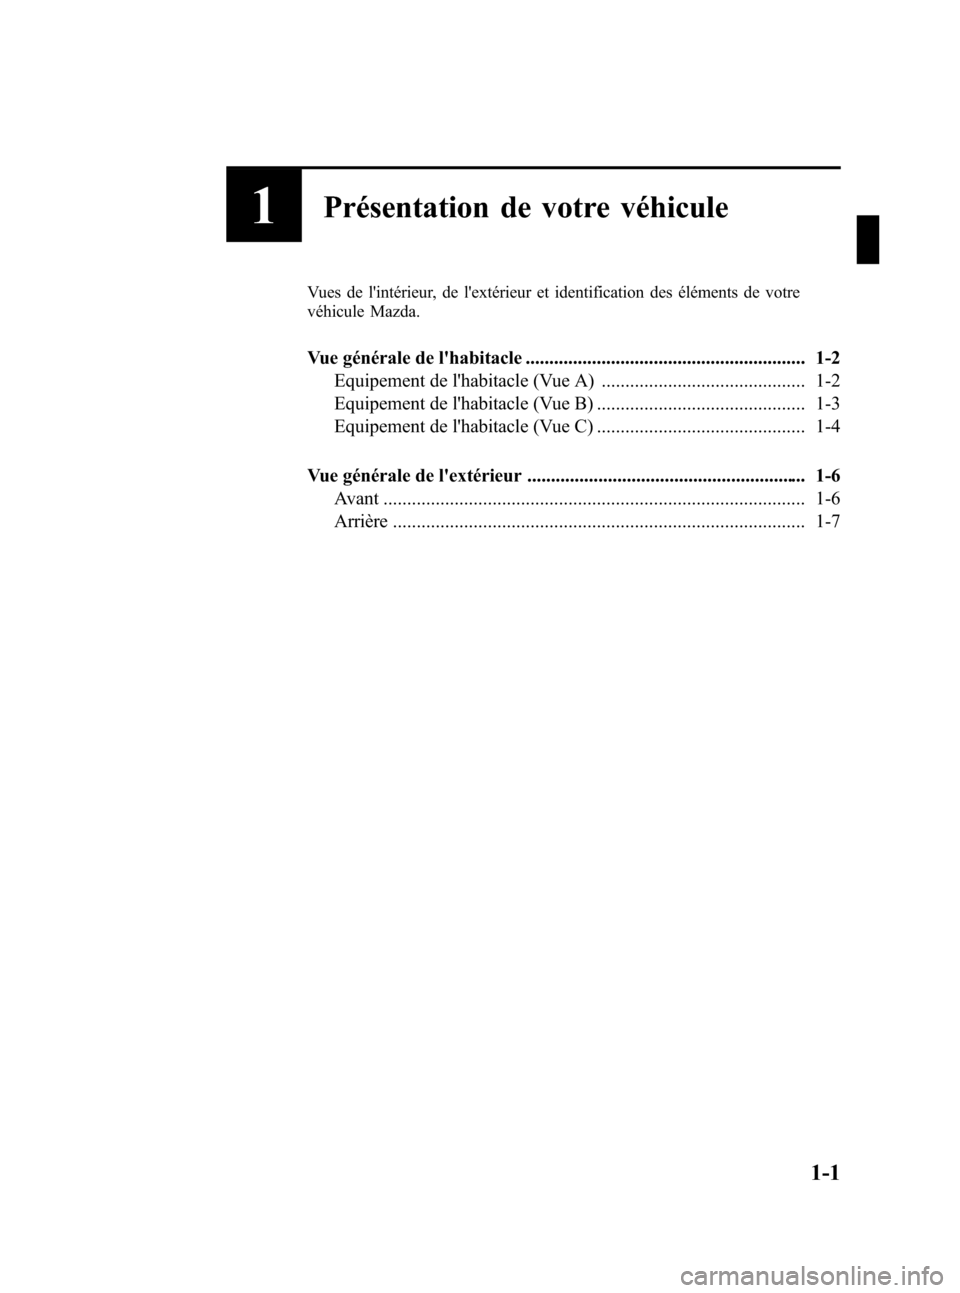 MAZDA MODEL CX-7 2008  Manuel du propriétaire (in French) Black plate (7,1)
1Présentation de votre véhicule
Vues de lintérieur, de lextérieur et identification des éléments de votre
véhicule Mazda.
Vue générale de lhabitacle .....................